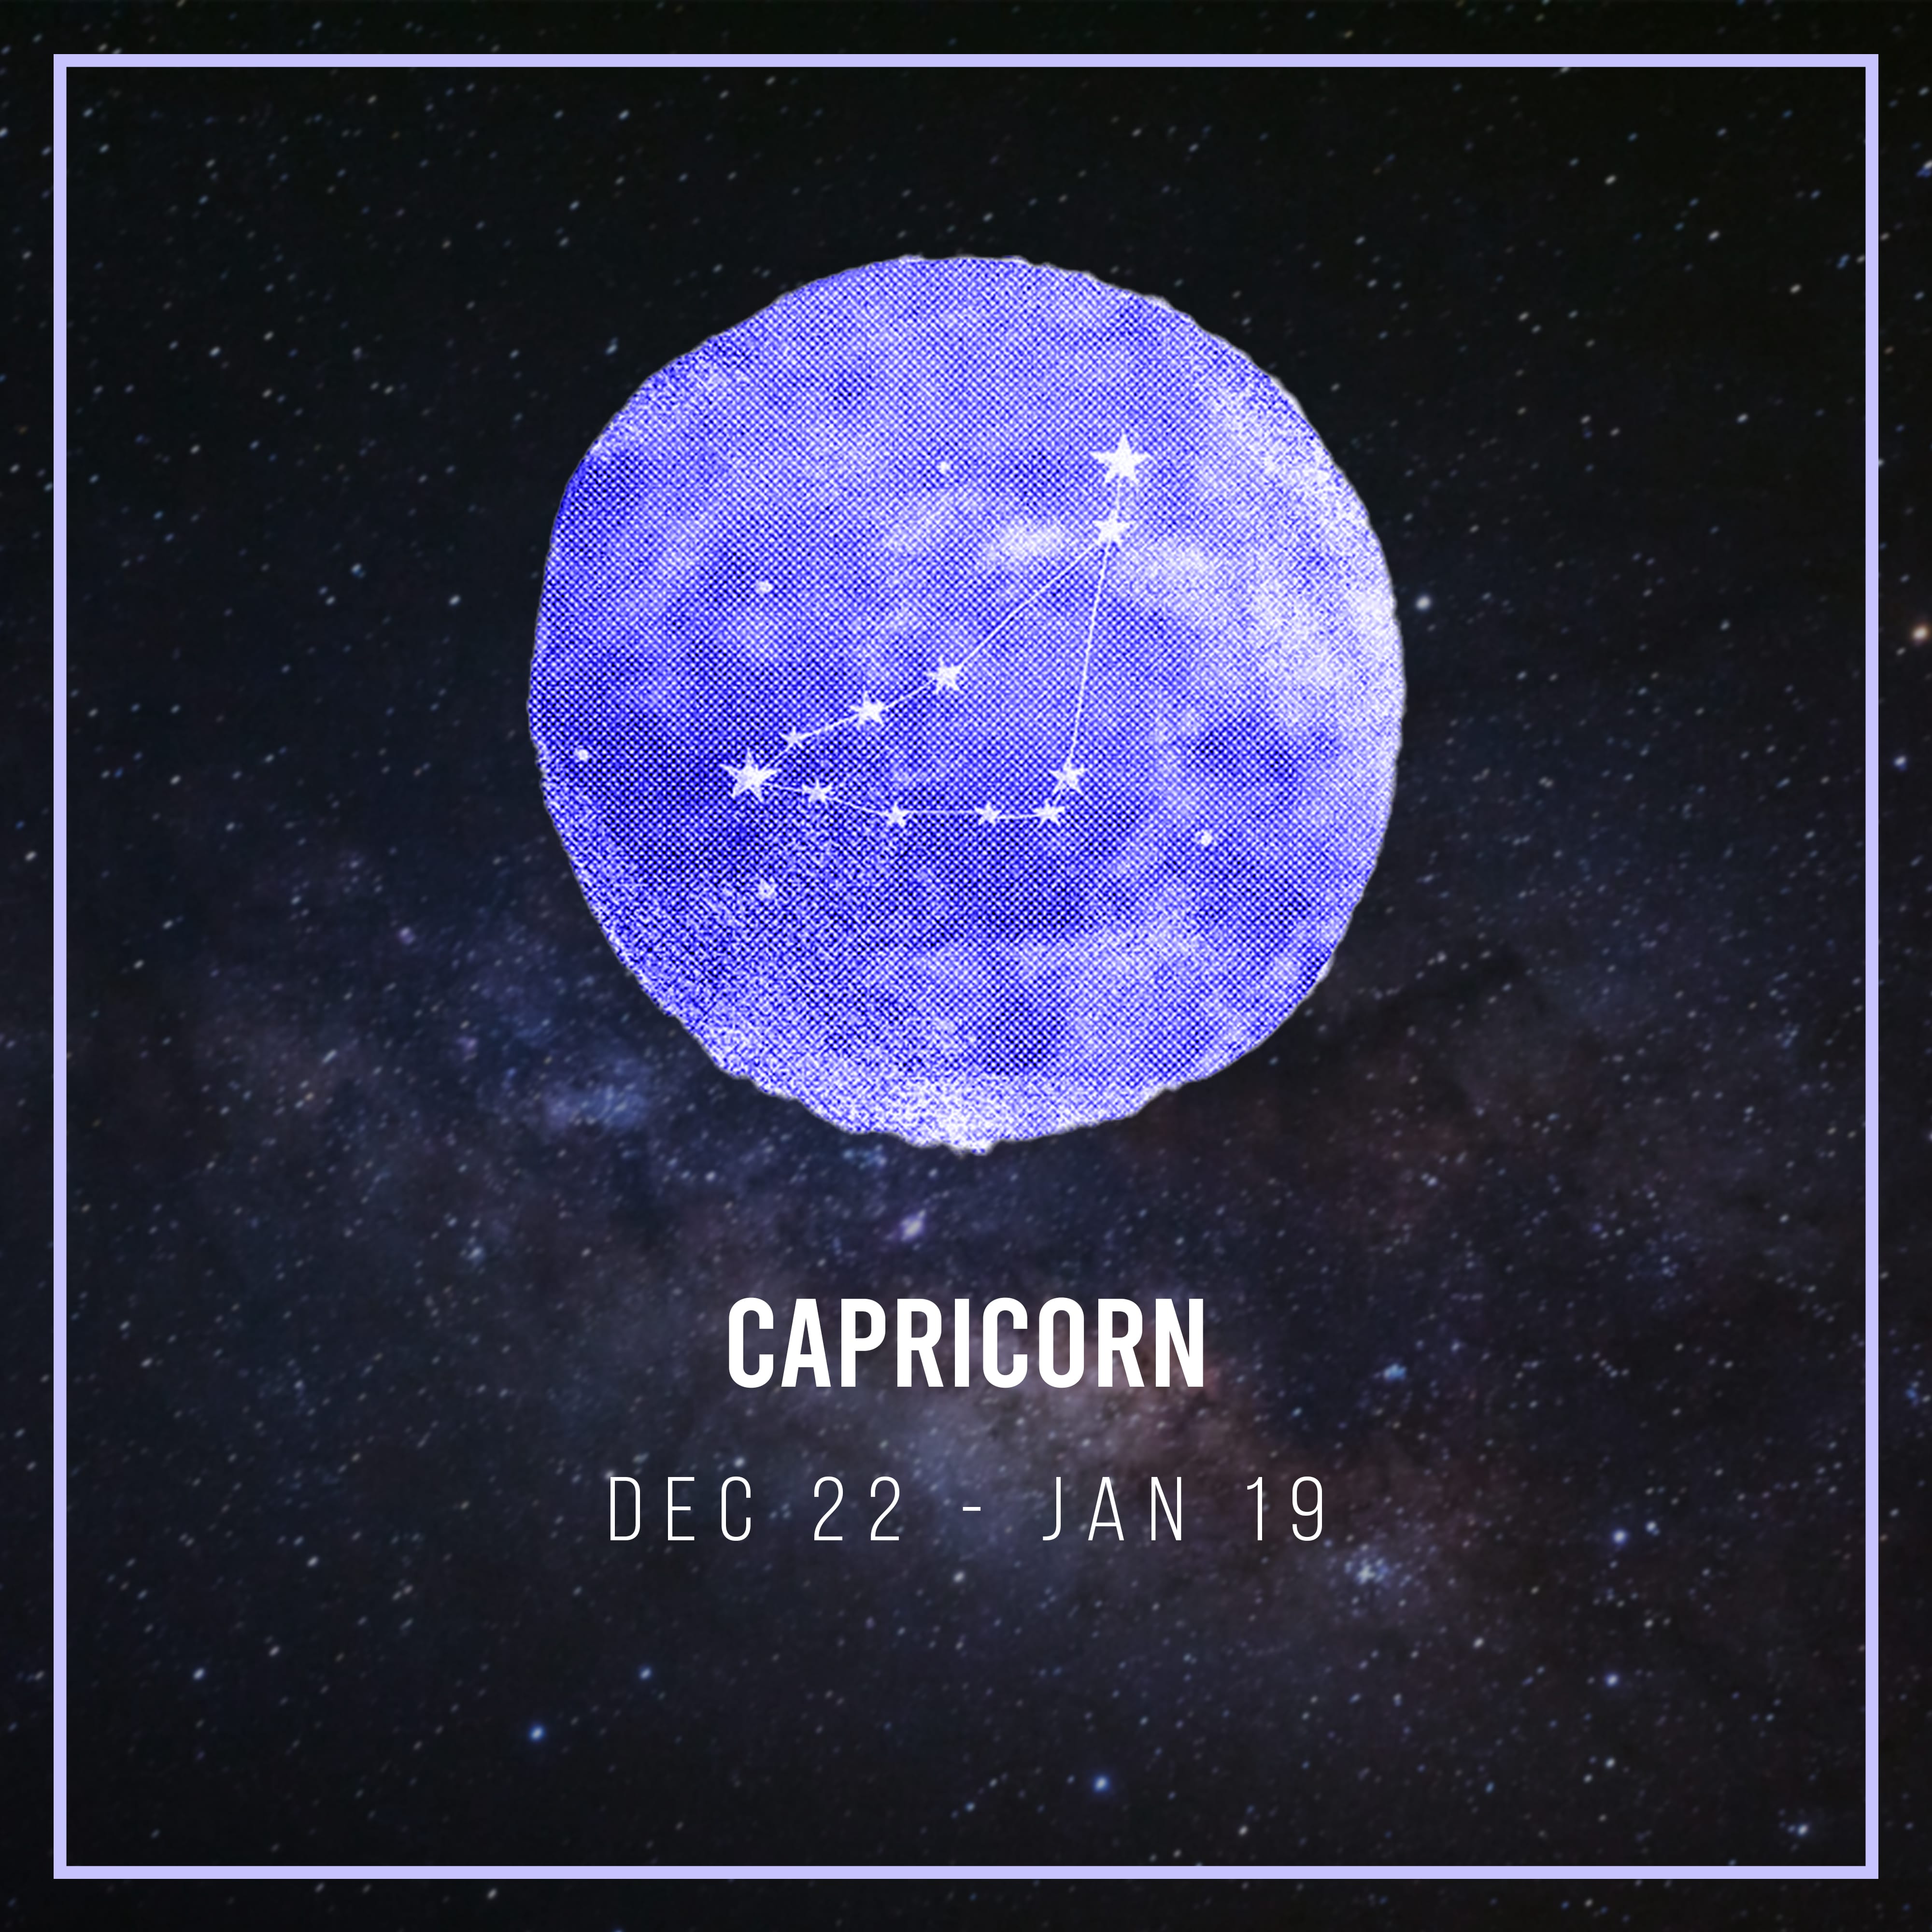 Capricorns-the rebellious ones